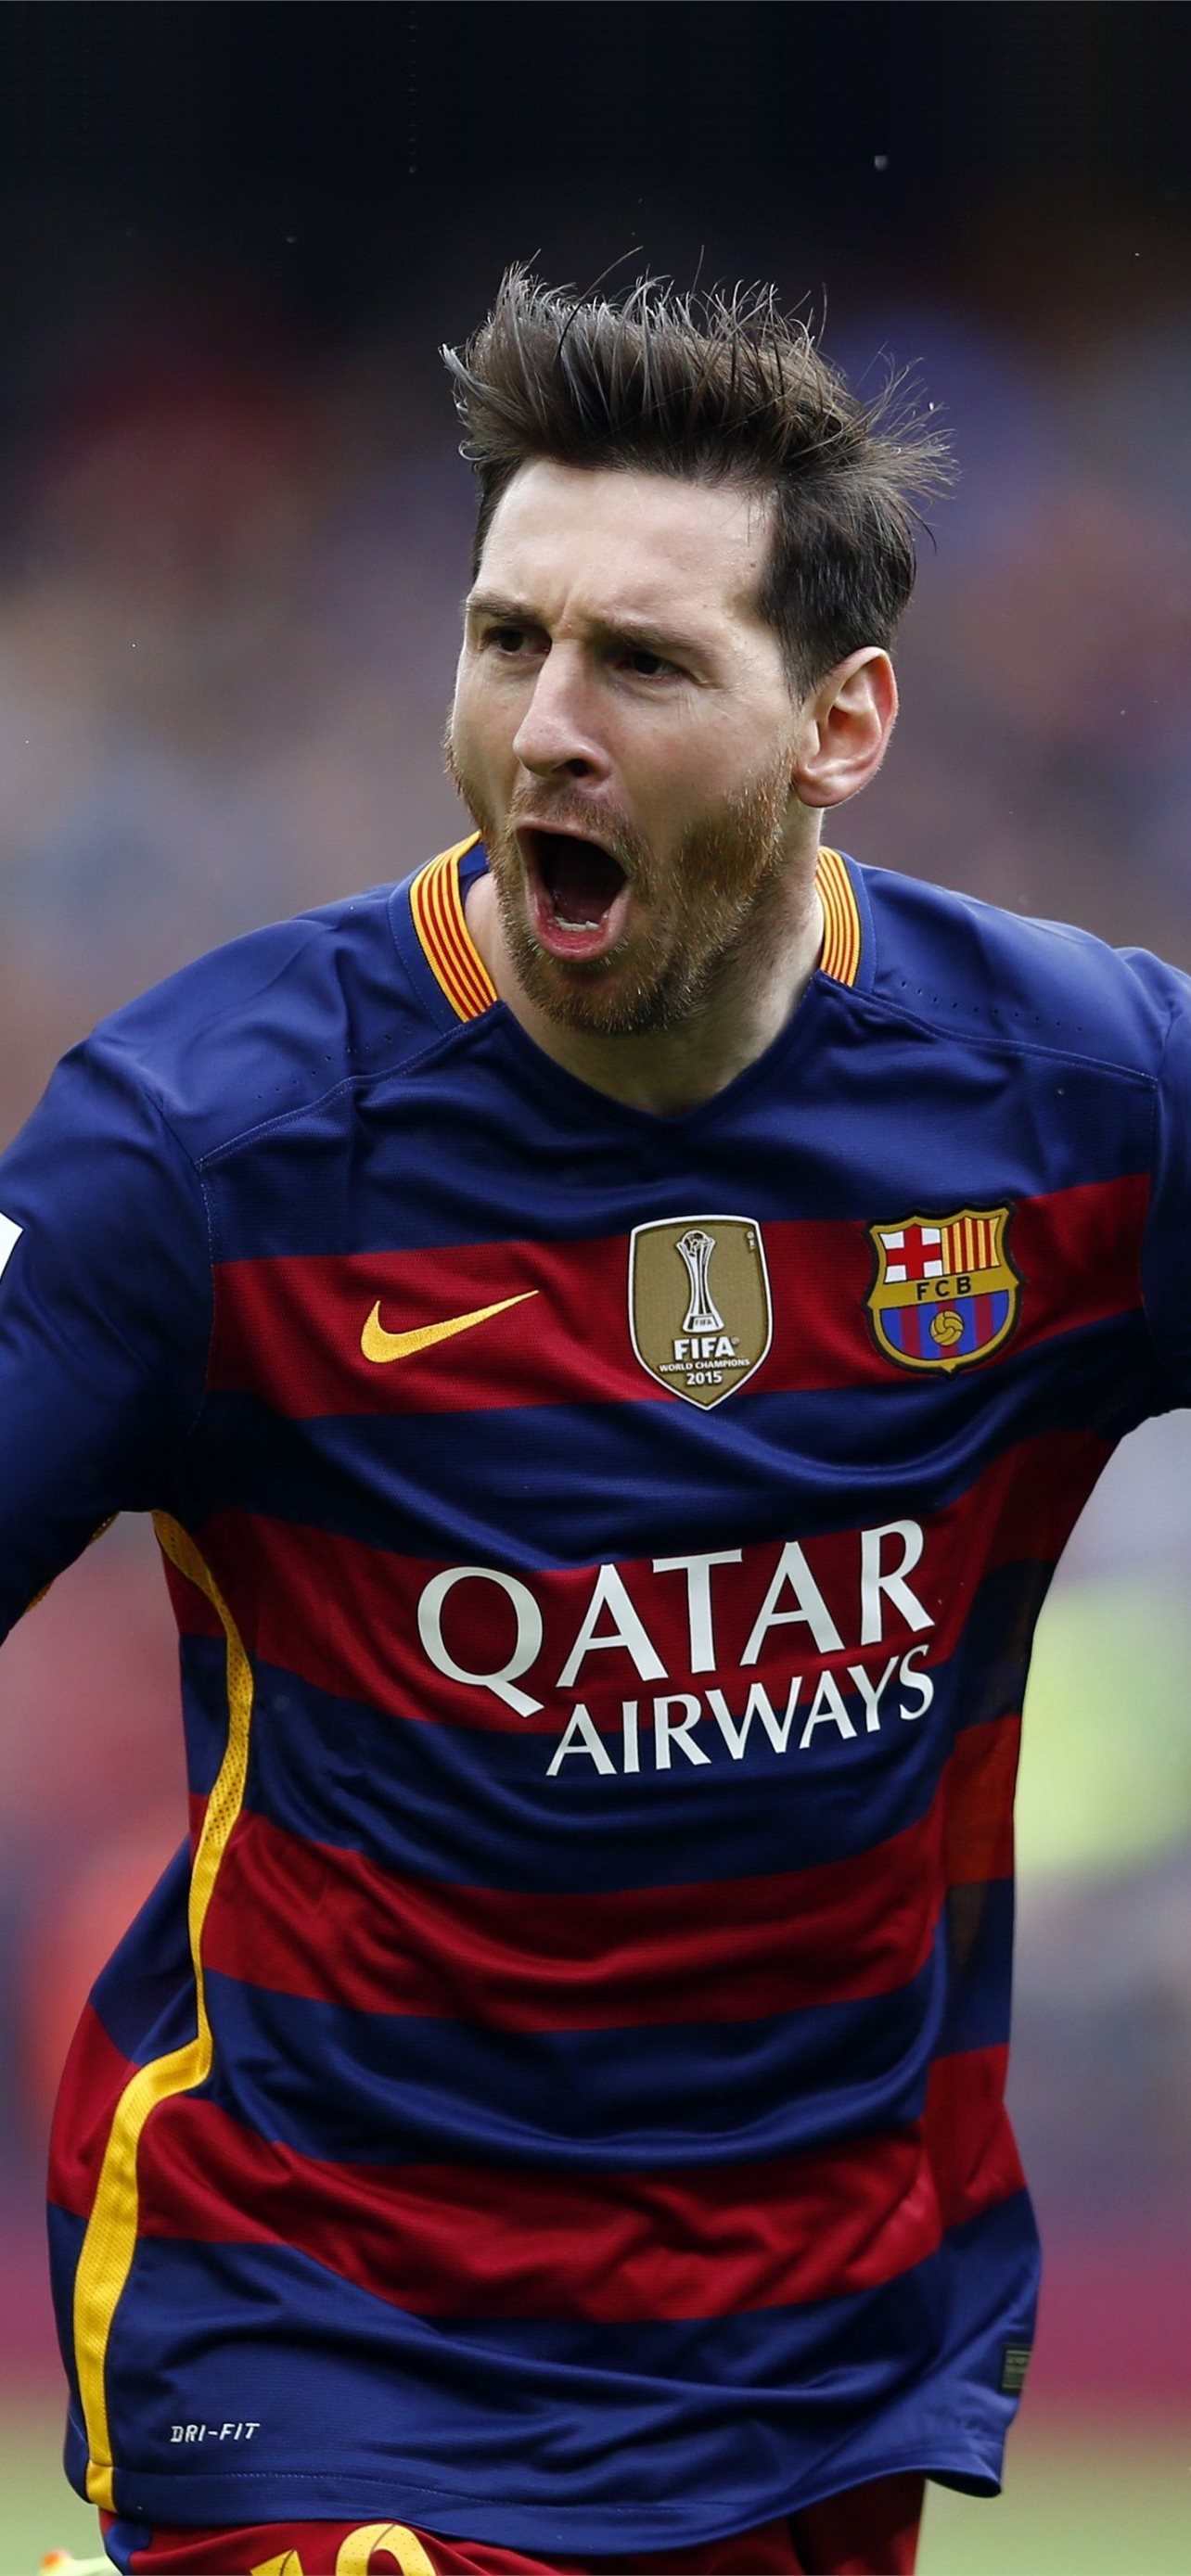 Hãy cập nhật cho mình một bức ảnh nền điện thoại iPhone 12 của Messi tuyệt đẹp để thể hiện tình yêu của bạn dành cho một trong những cầu thủ bóng đá xuất sắc nhất thế giới.